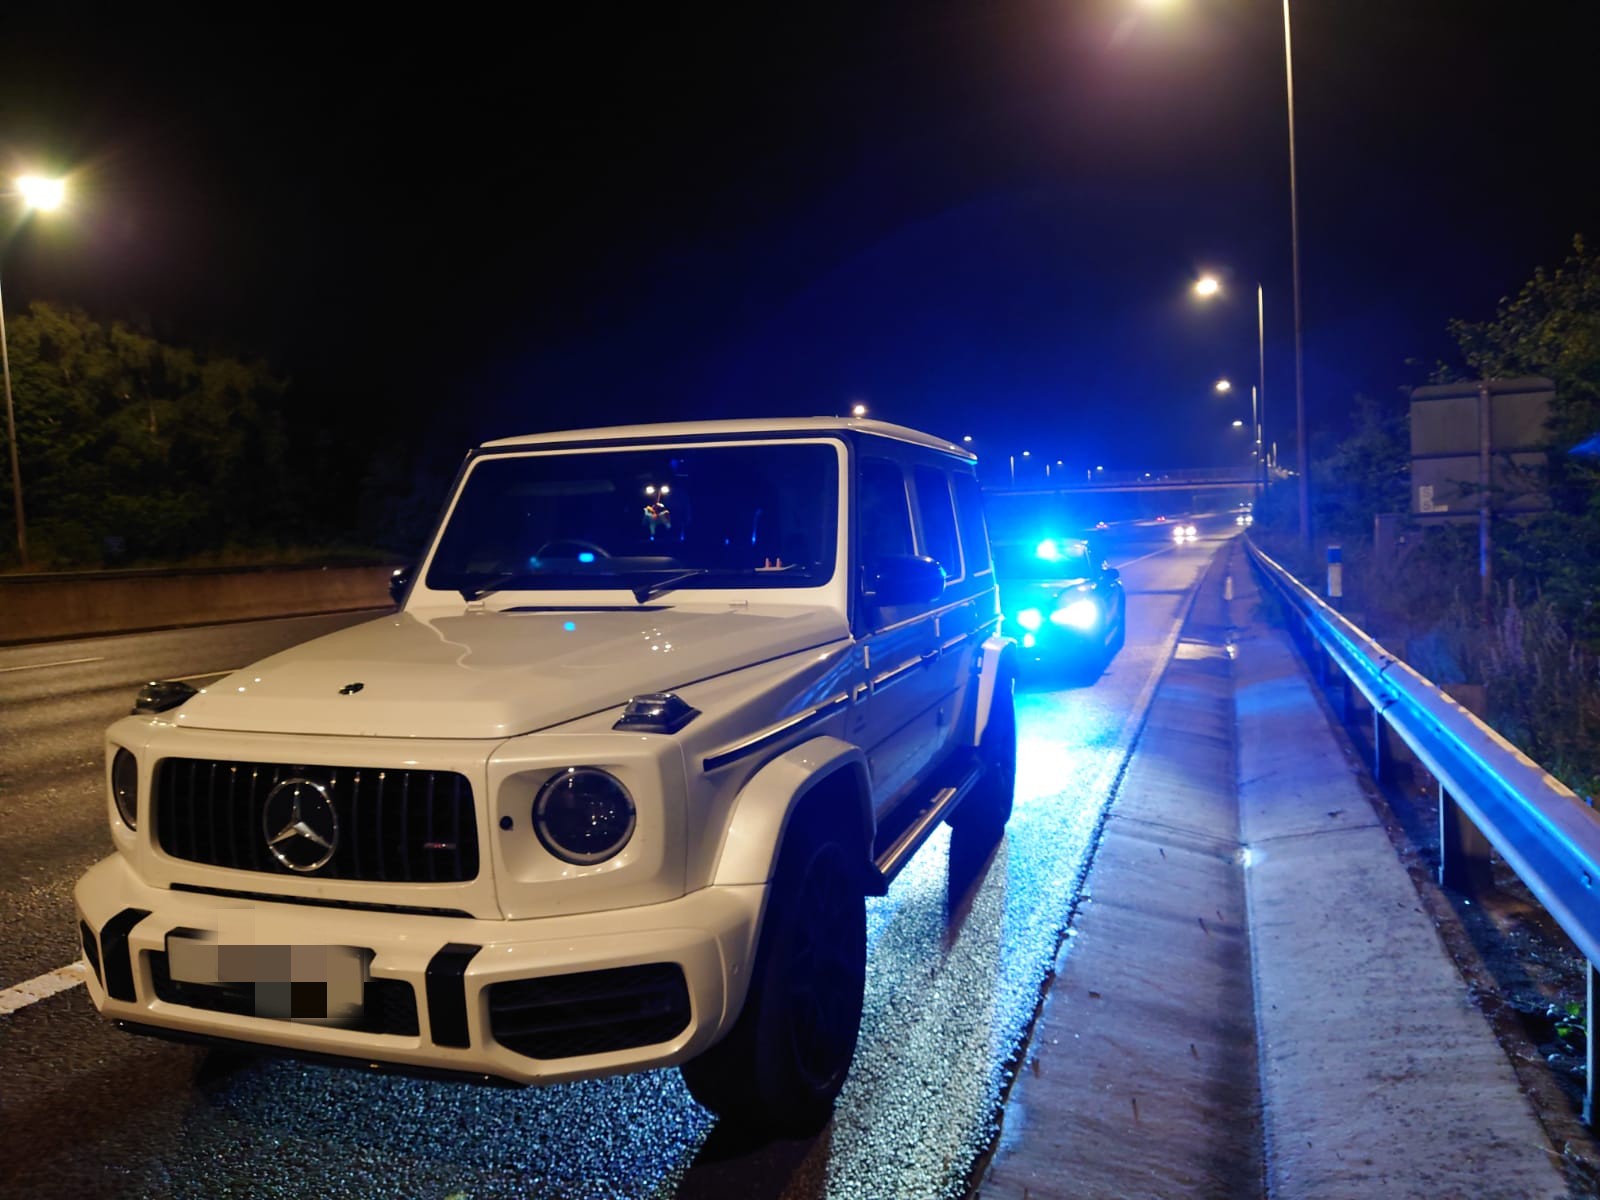 Buồn đi vệ sinh, nữ tài xế cầm lái Mercedes-AMG G63 phi 210 km/h